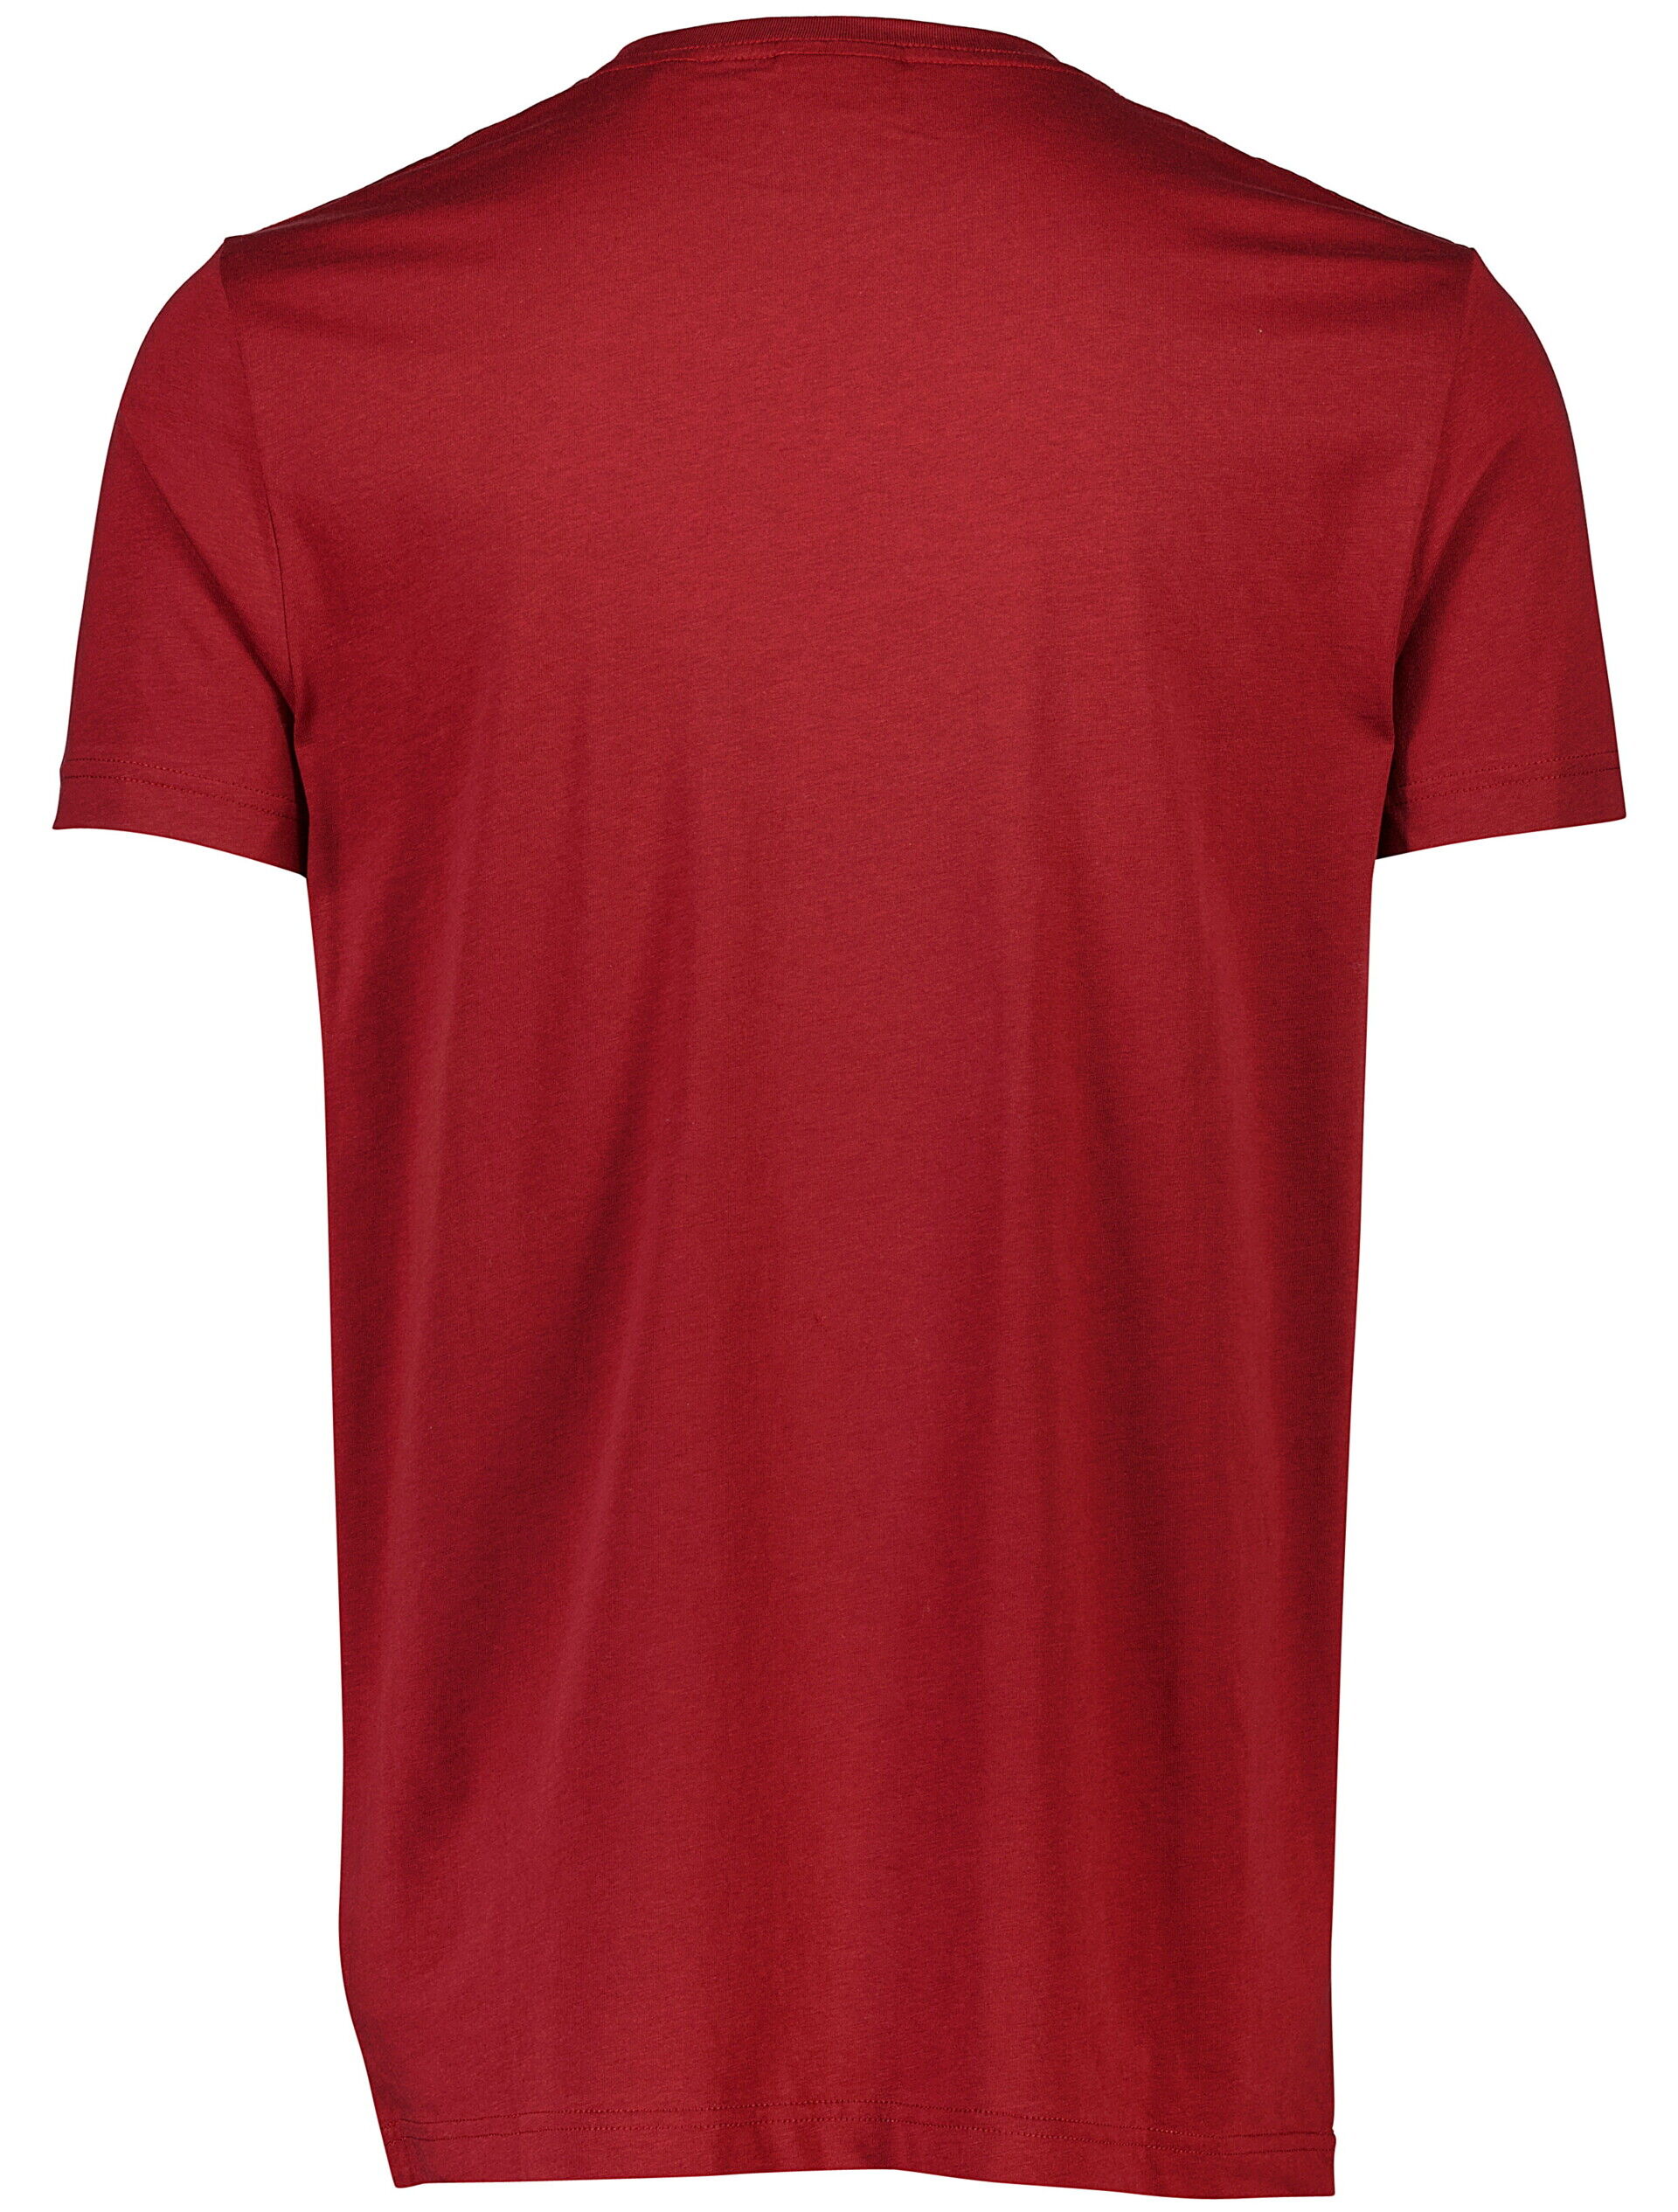 Gant  T-shirt 90-400157